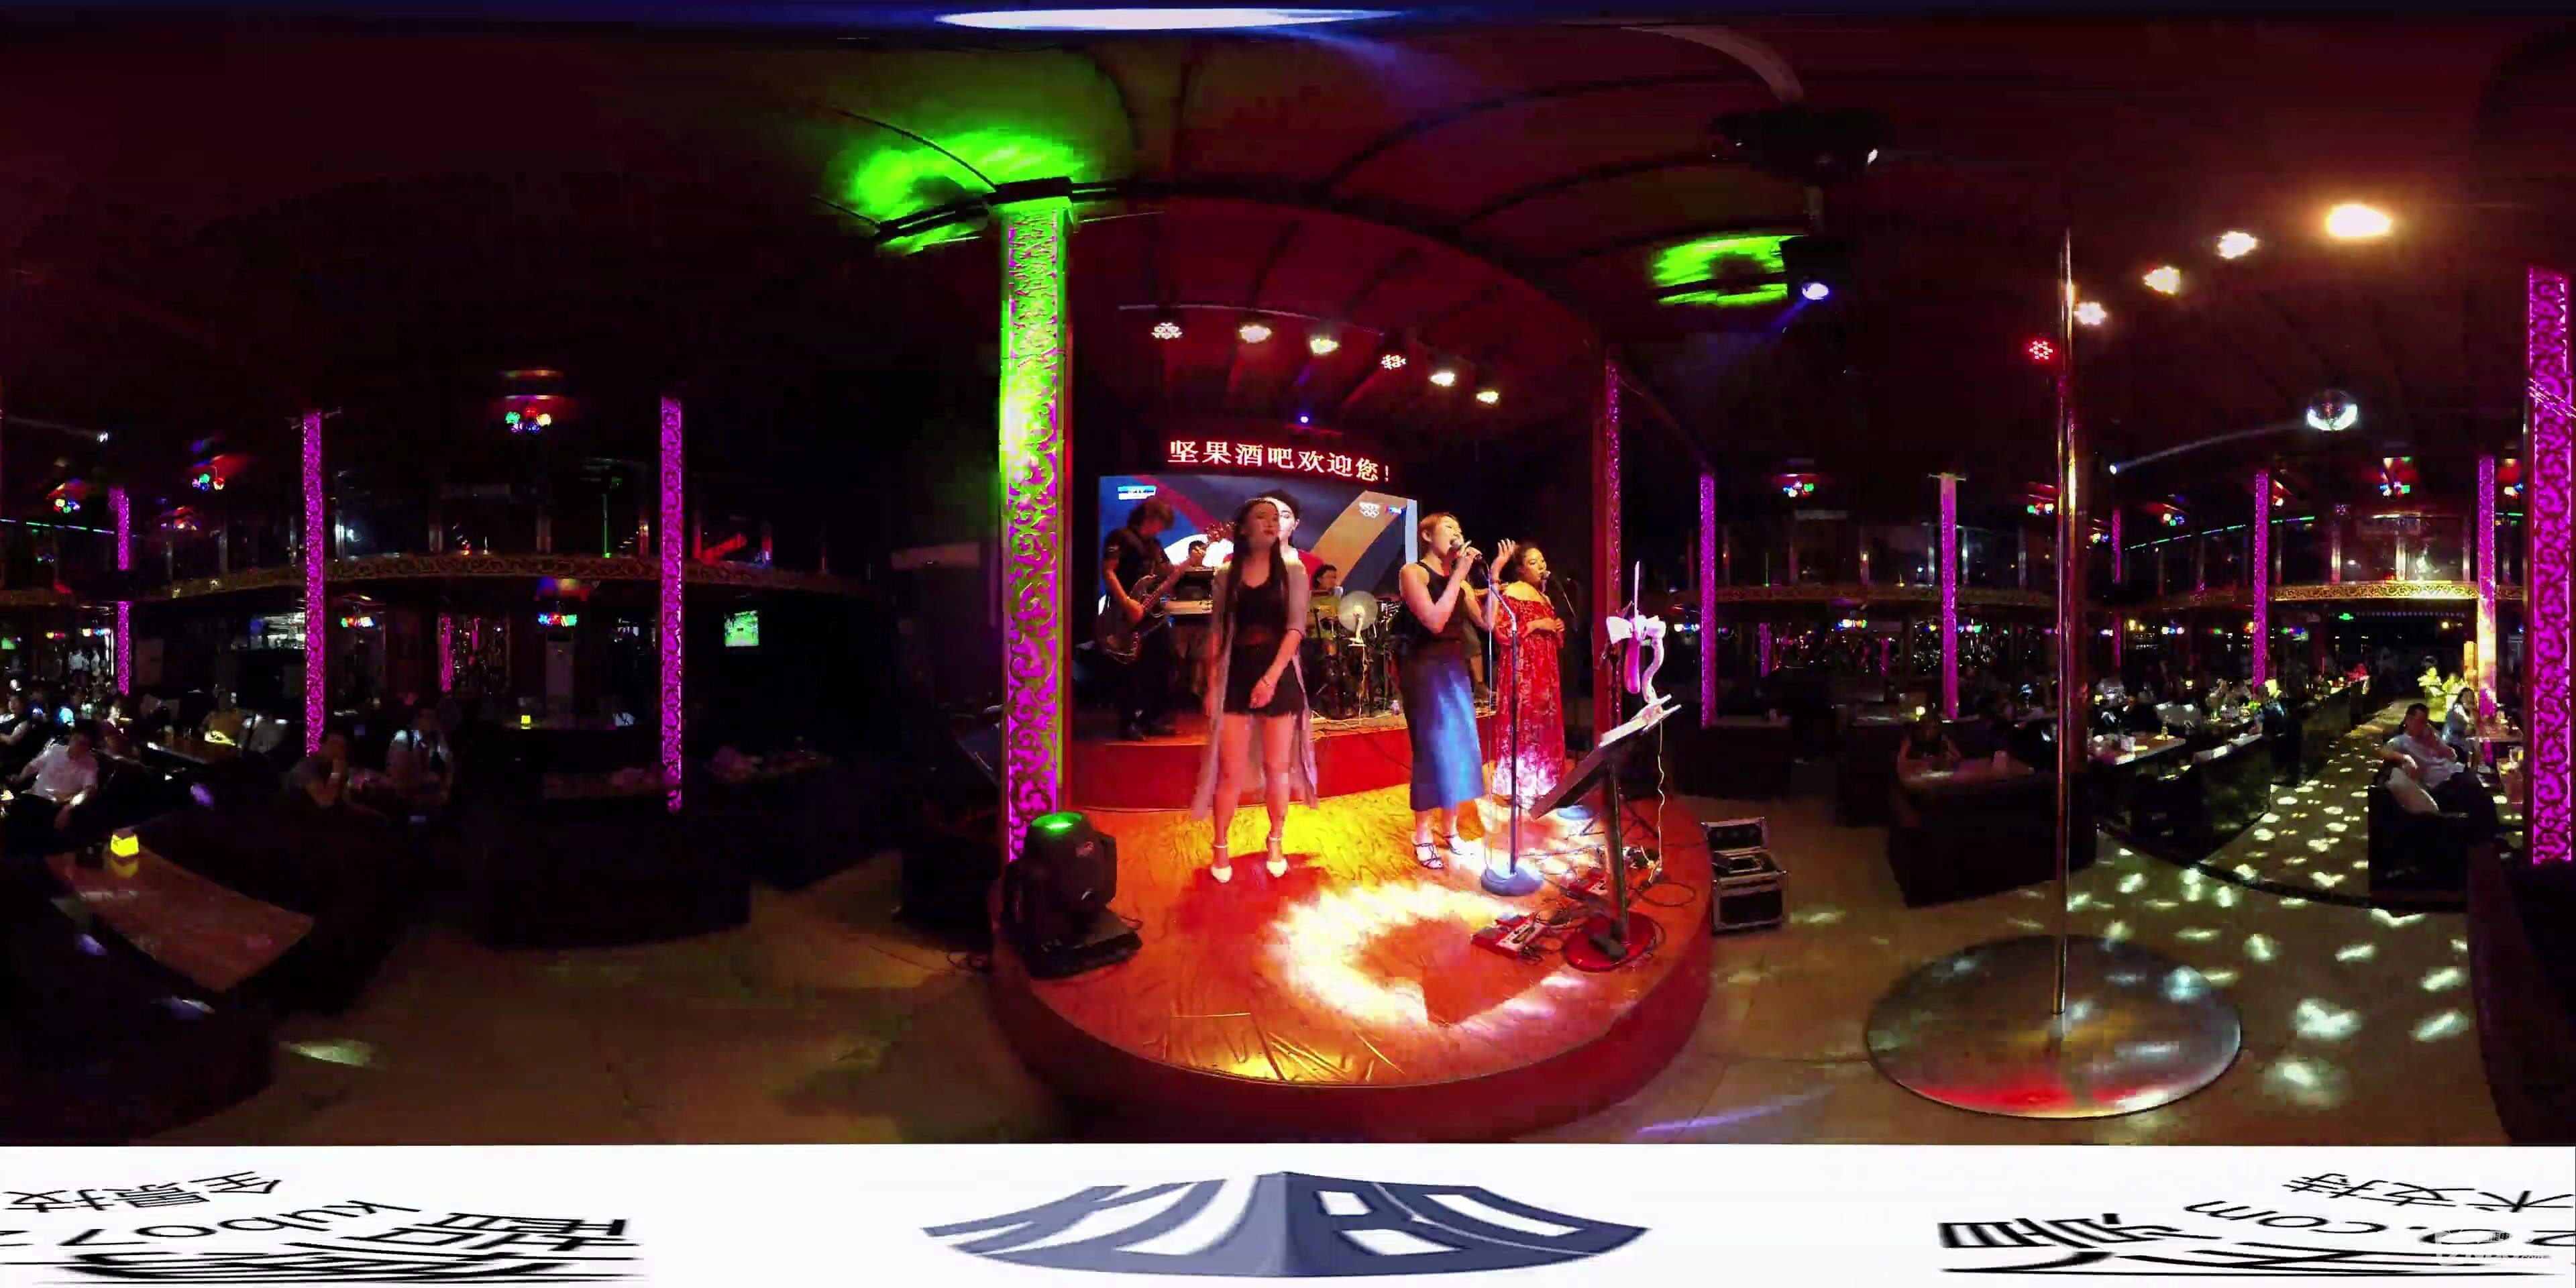 【360度VR全景视频】后海酒吧音乐现场:《Ro